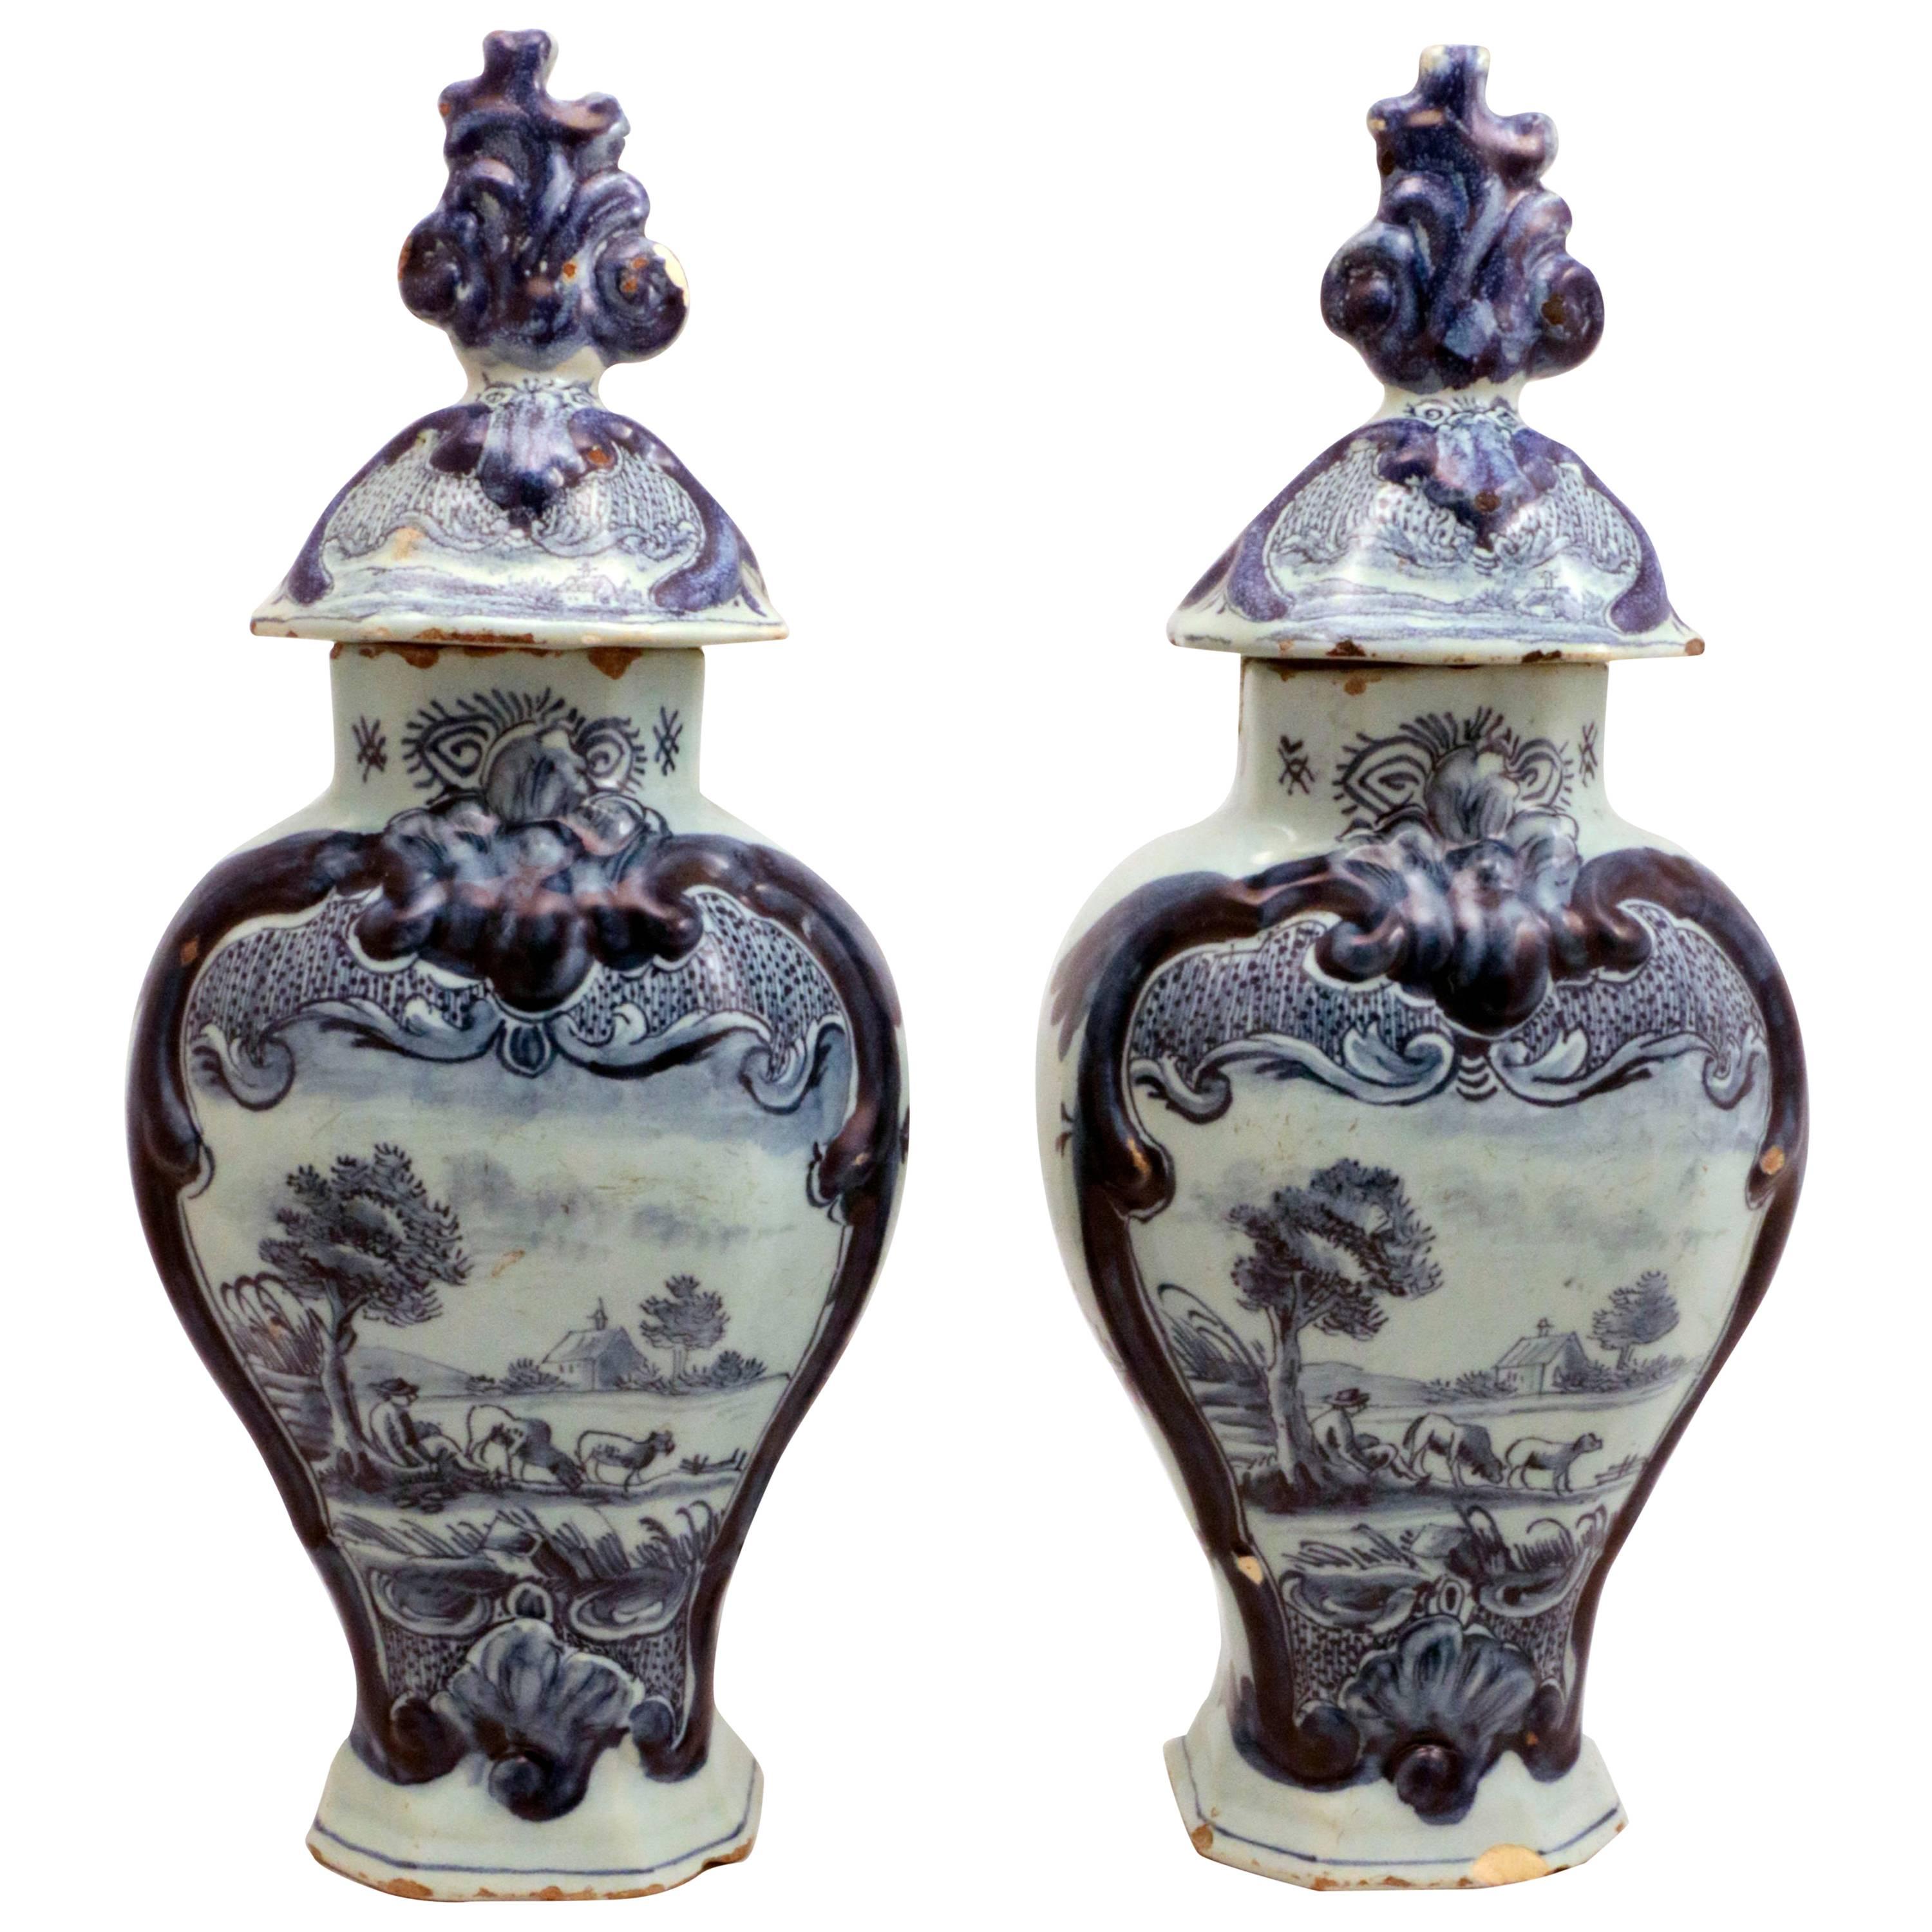 Attractive Pair of 18th Century Dutch Delft Vases